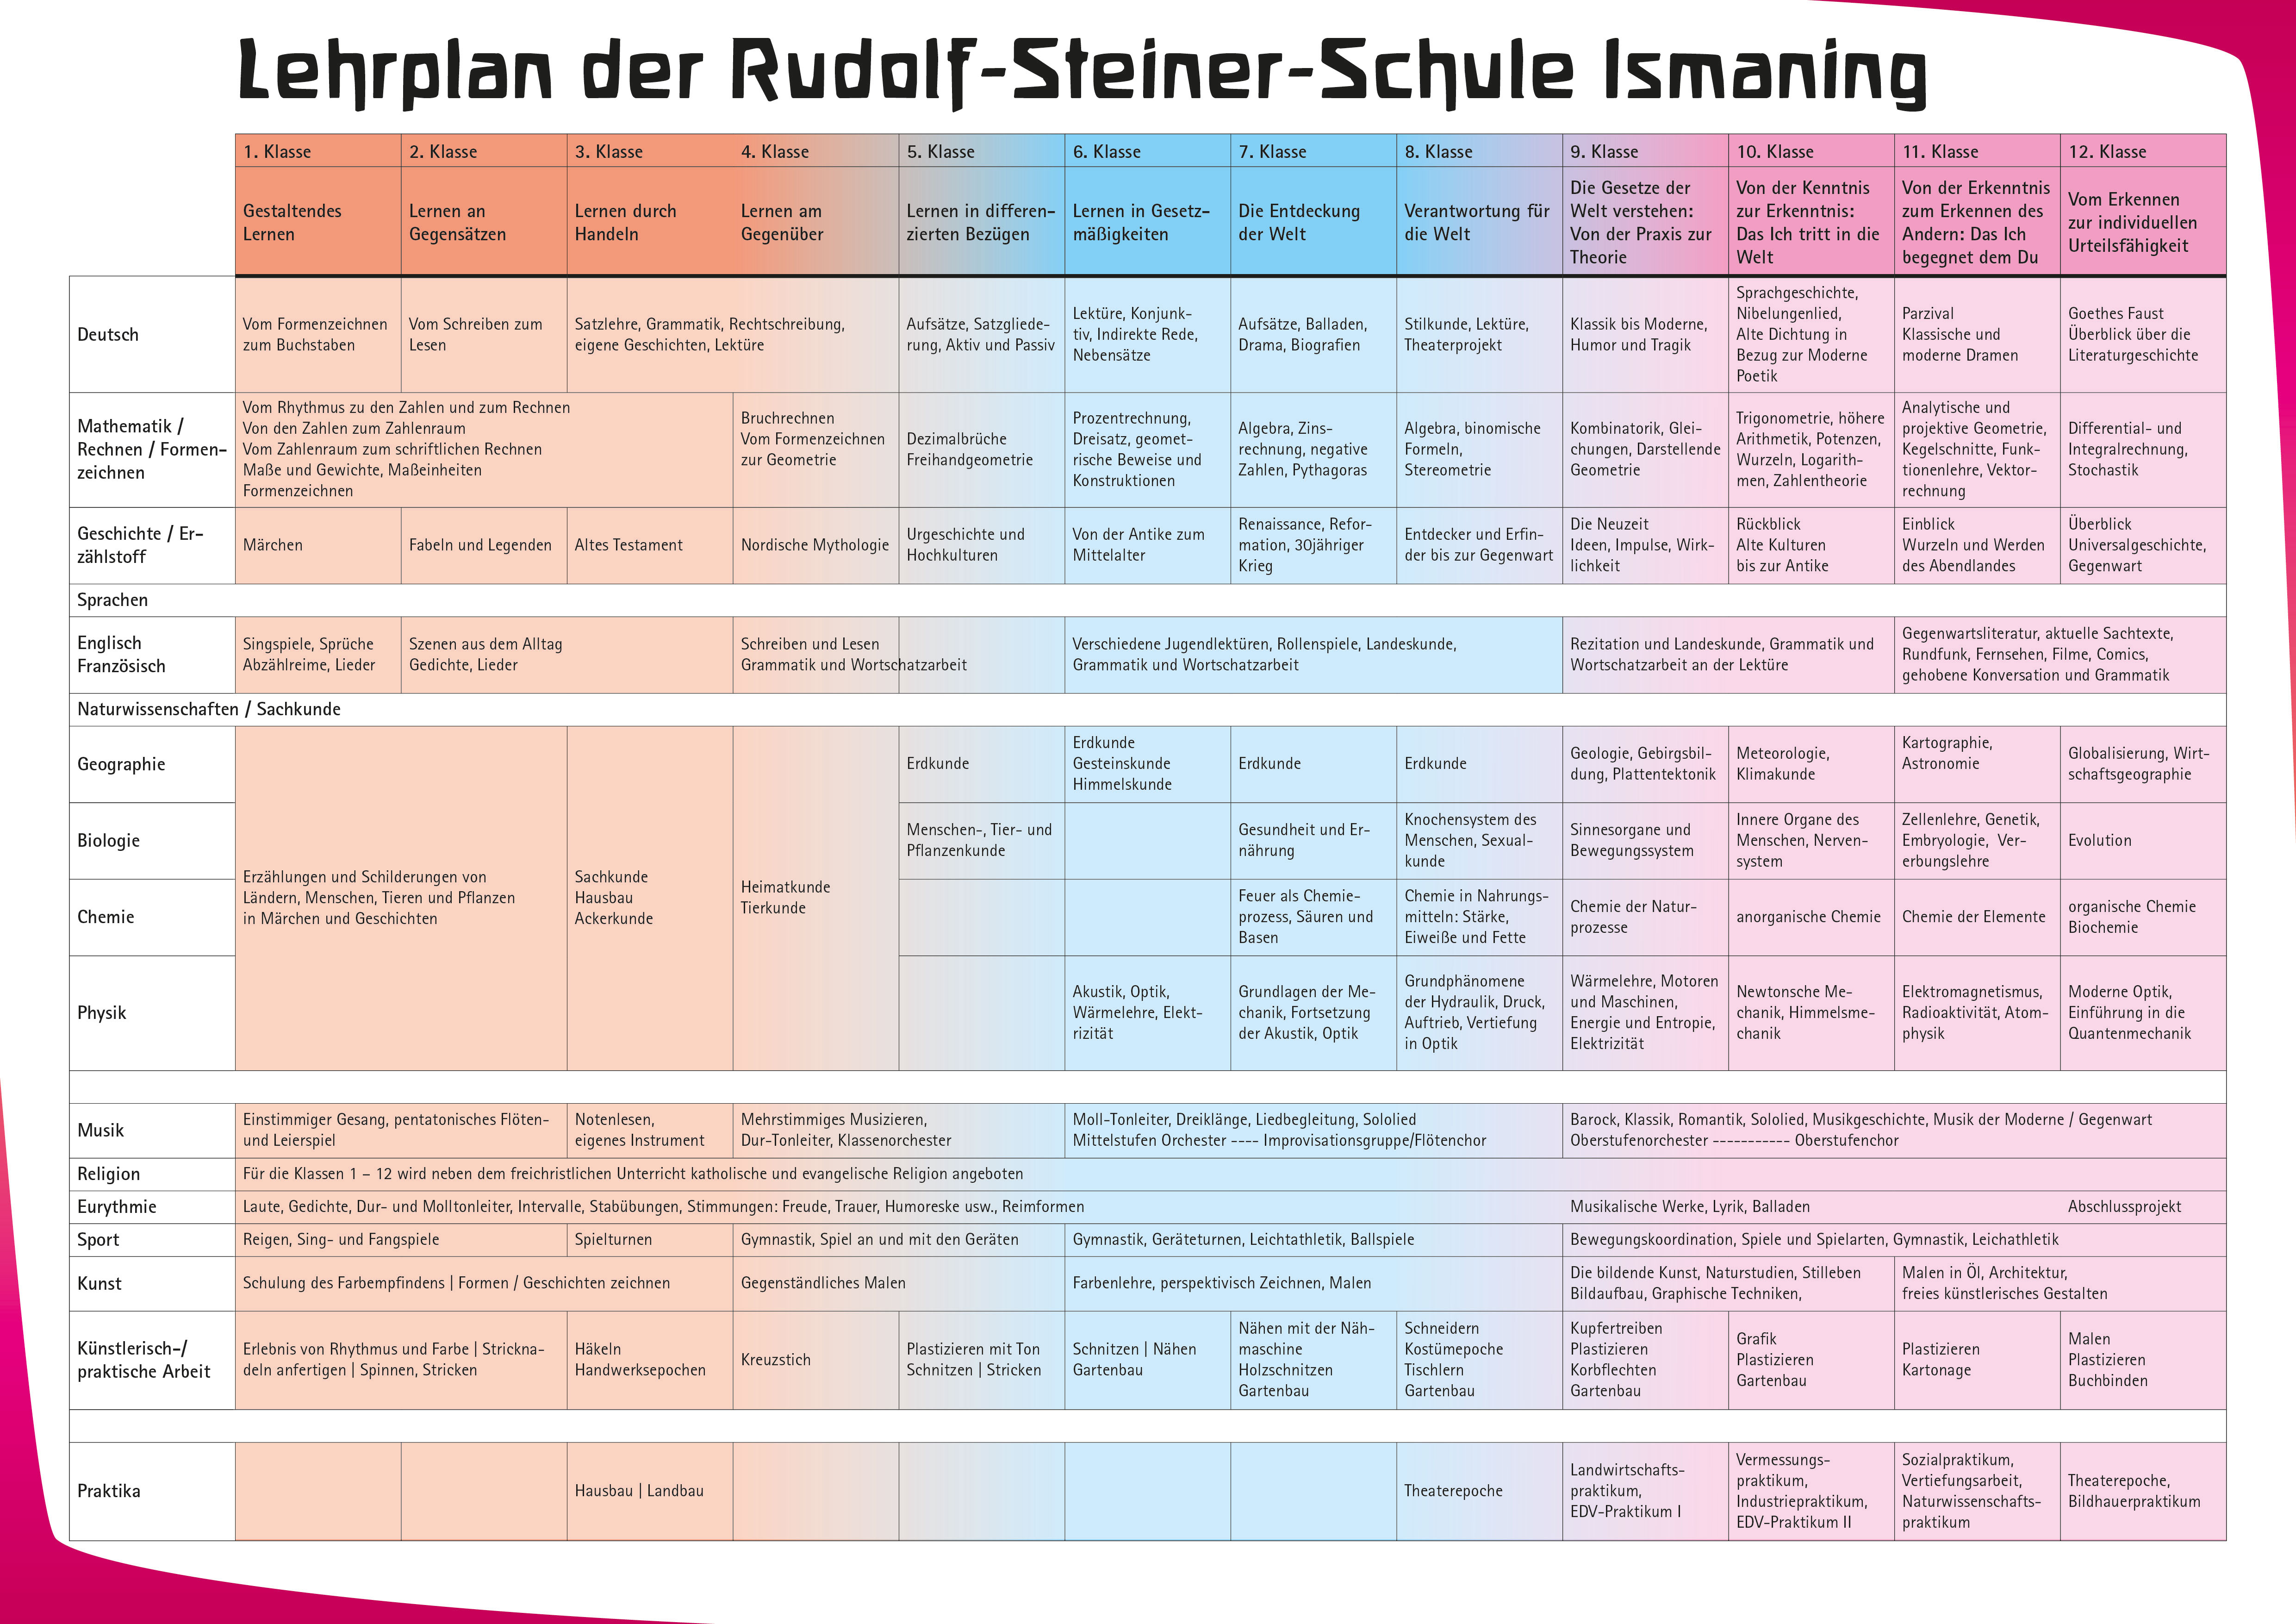 Lehrplan der Rudolf-Steiner-Schule Ismaning bei München